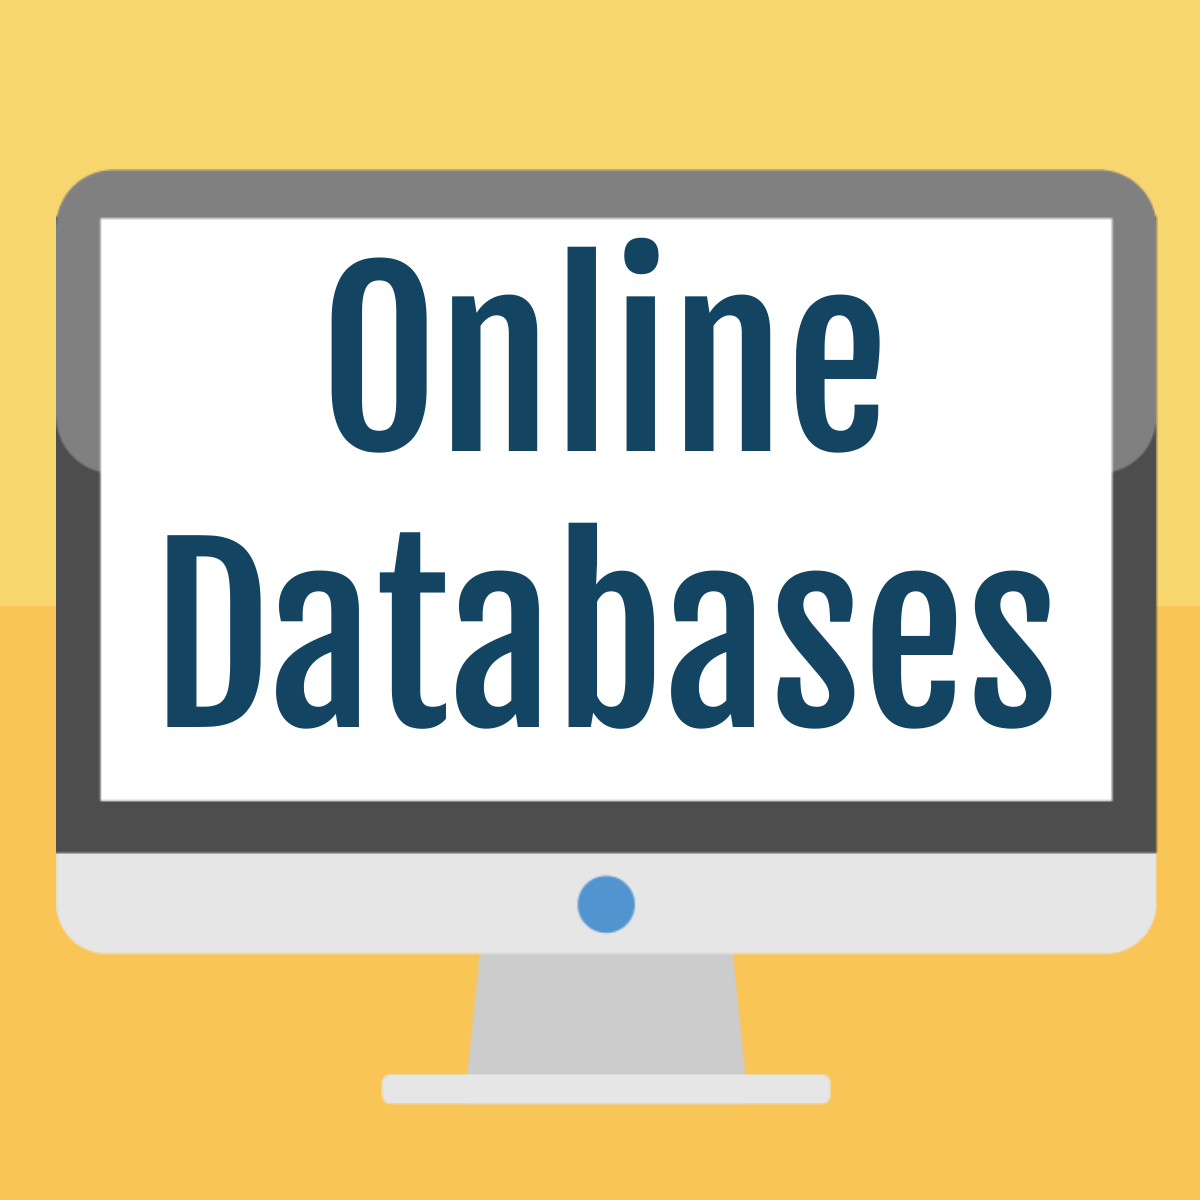 Online databases